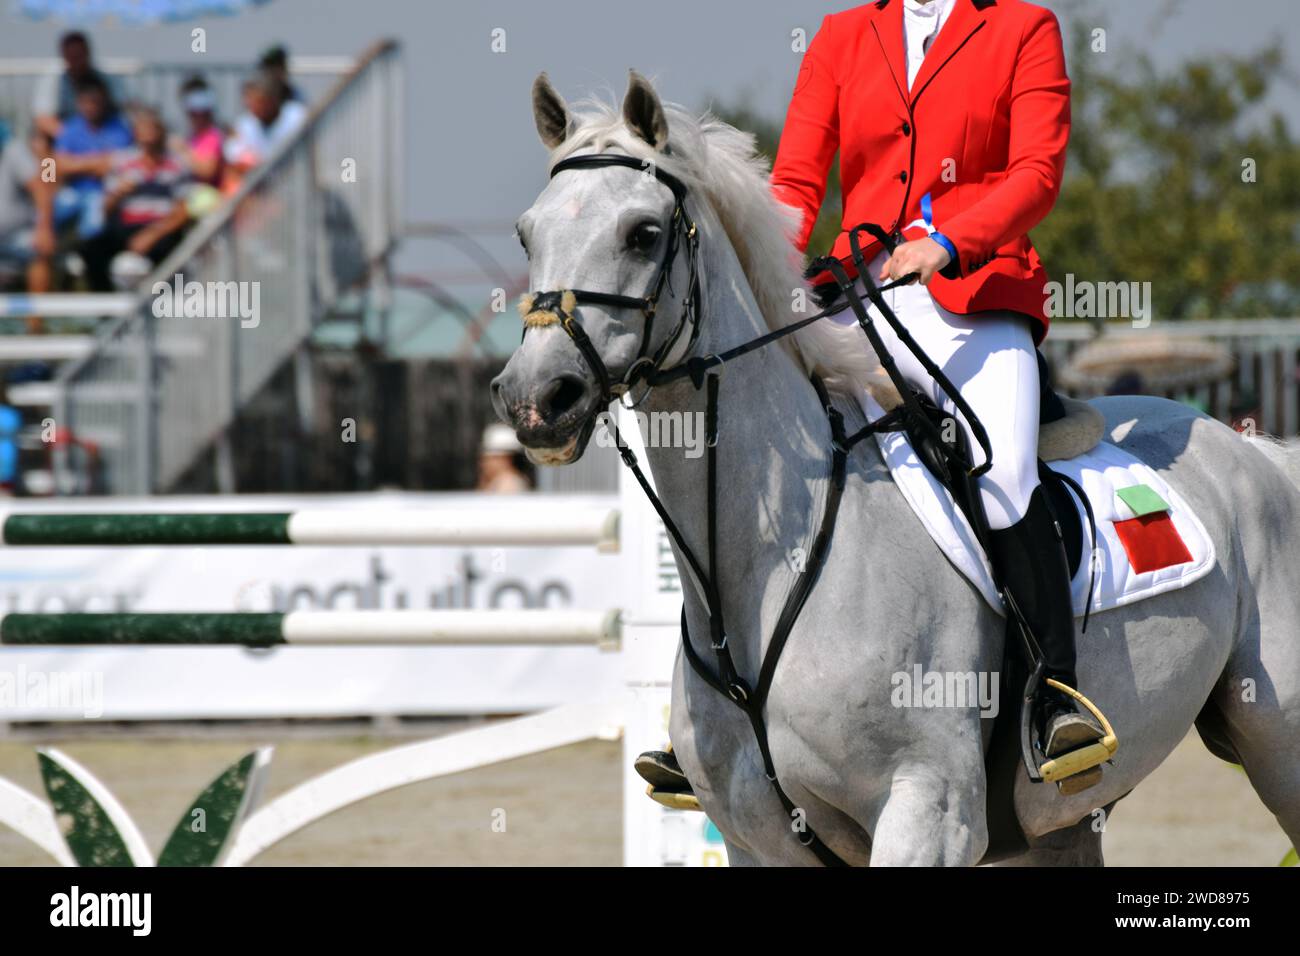 Un beau cheval blanc participant à une compétition équestre. Les sports équestres utilisent les chevaux comme une partie principale du sport. Banque D'Images